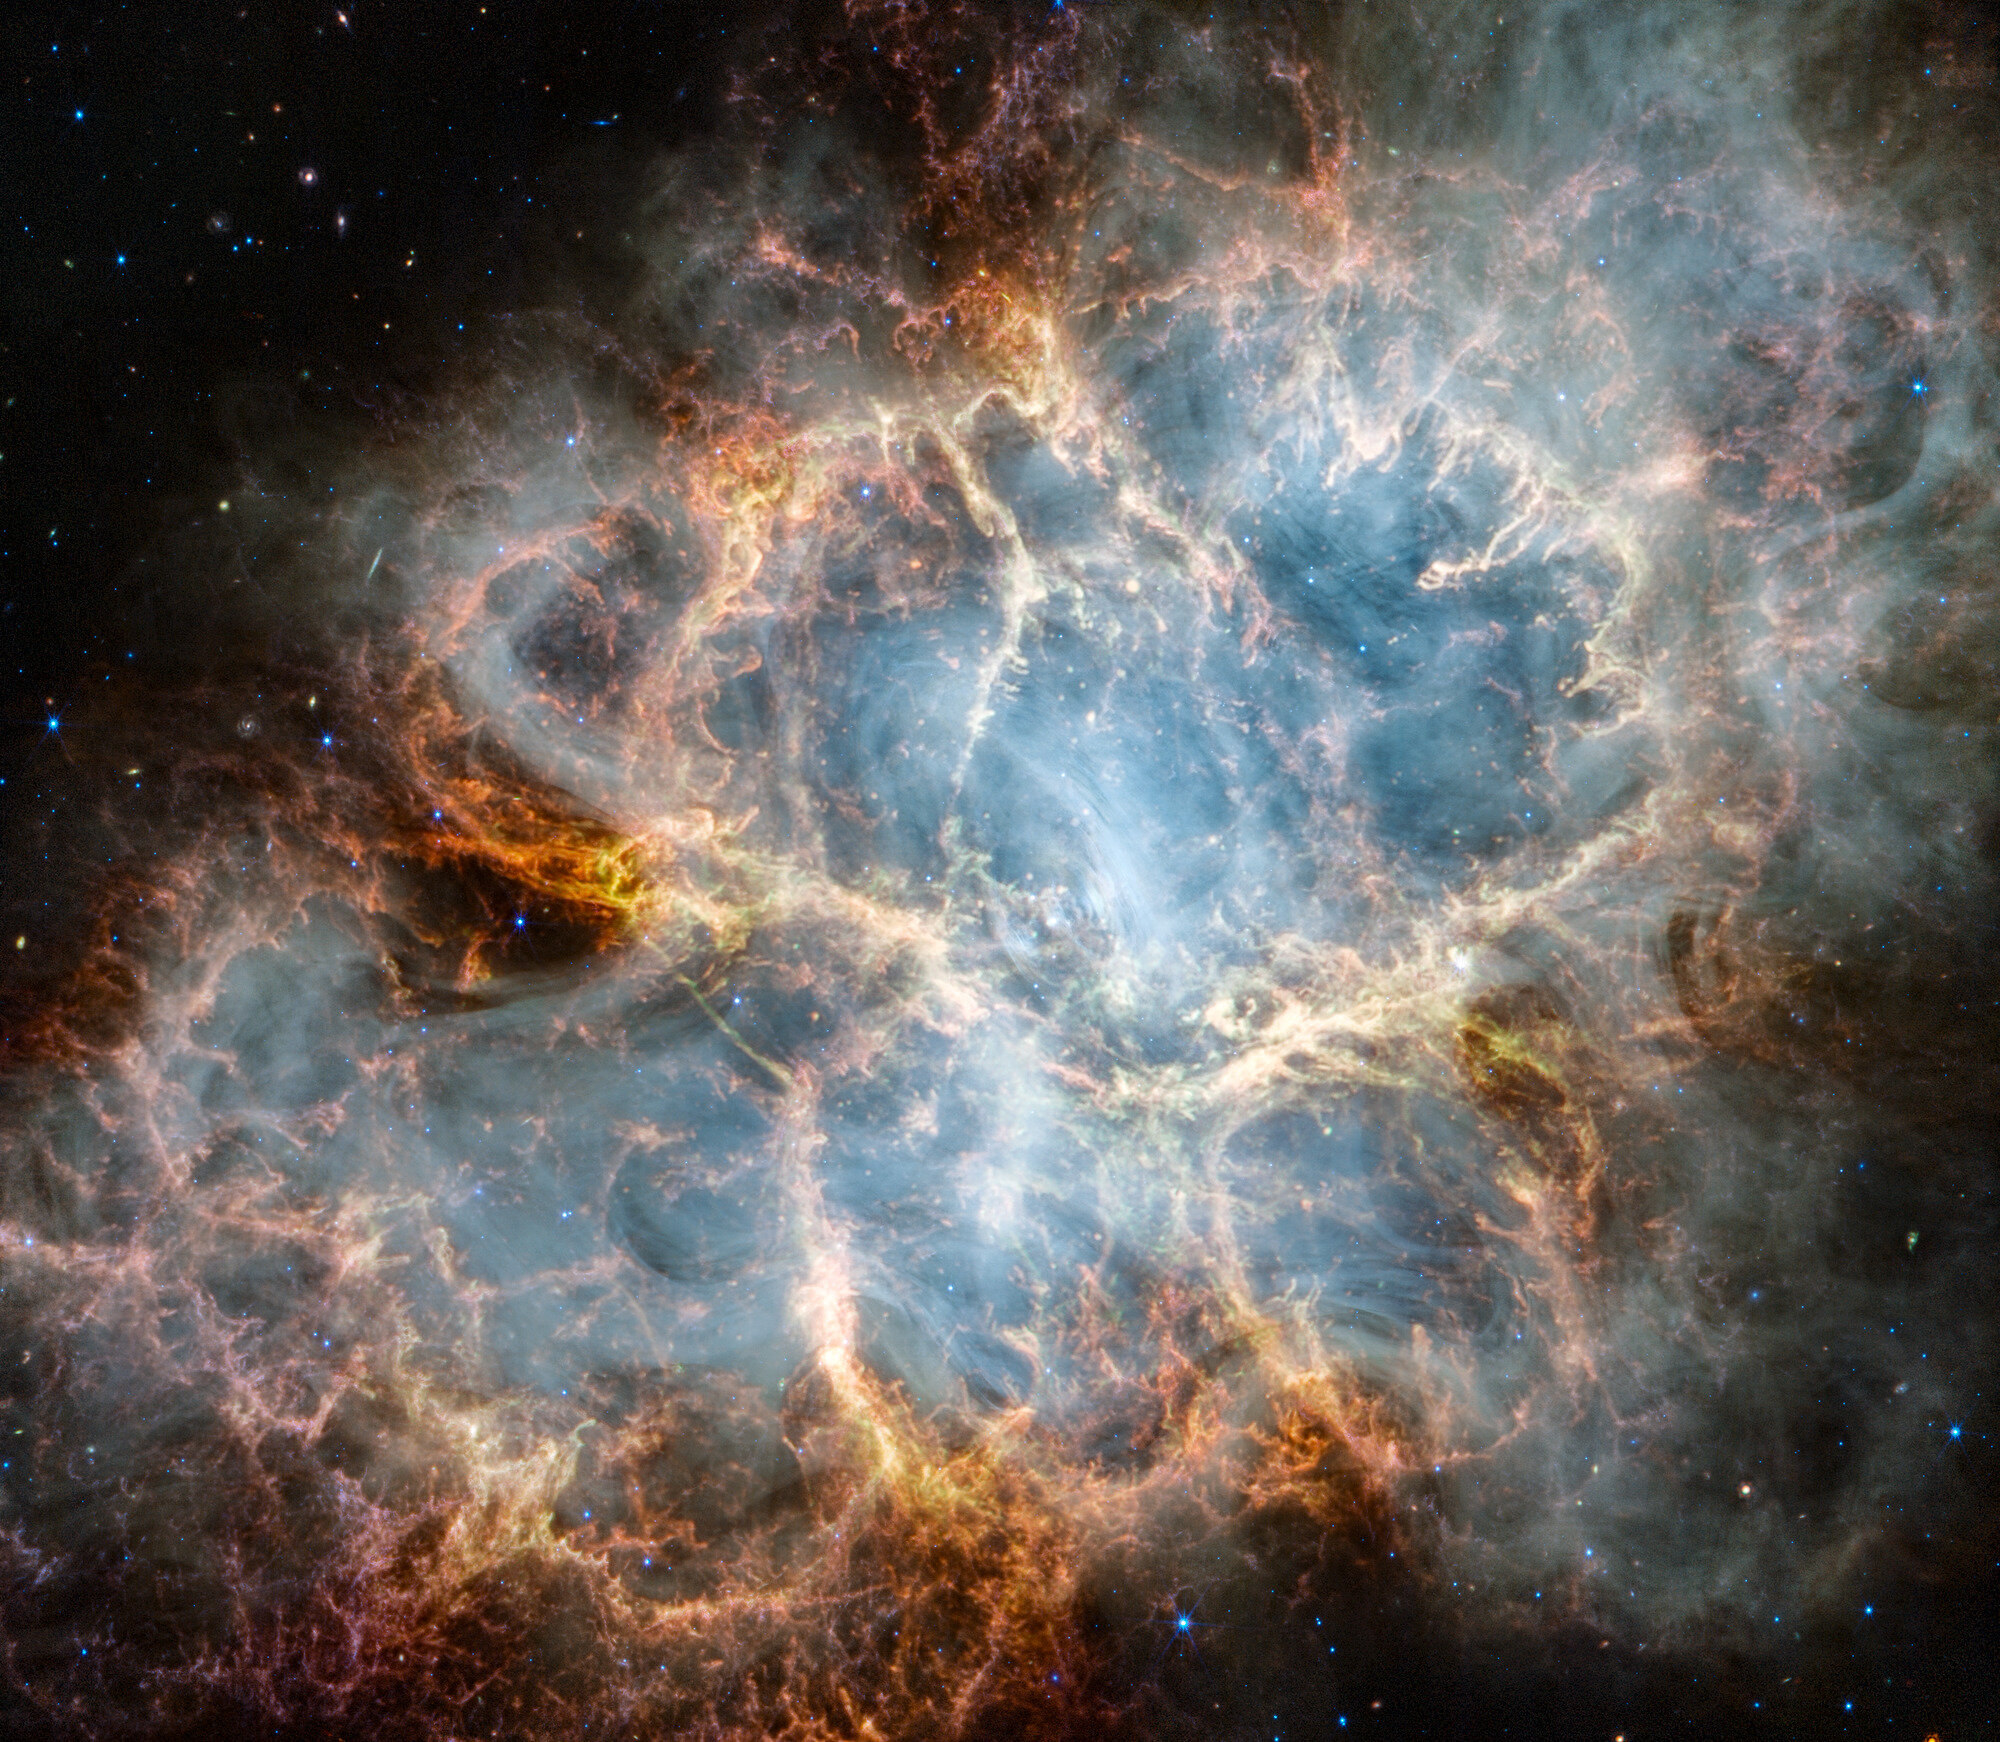 NASA-in svemirski teleskop James Webb promatrao je Rakovu maglicu u potrazi za odgovorima o podrijetlu ostatka supernove. Webbovi instrumenti NIRCam (blizu-infracrvena kamera) i MIRI (instrument za srednji infracrveni spektar) otkrili su nove detalje u infracrvenom svjetlu. Zasluge: Slika NASA, ESA, CSA, STScI, Tea Temim (Sveučilište Princeton)